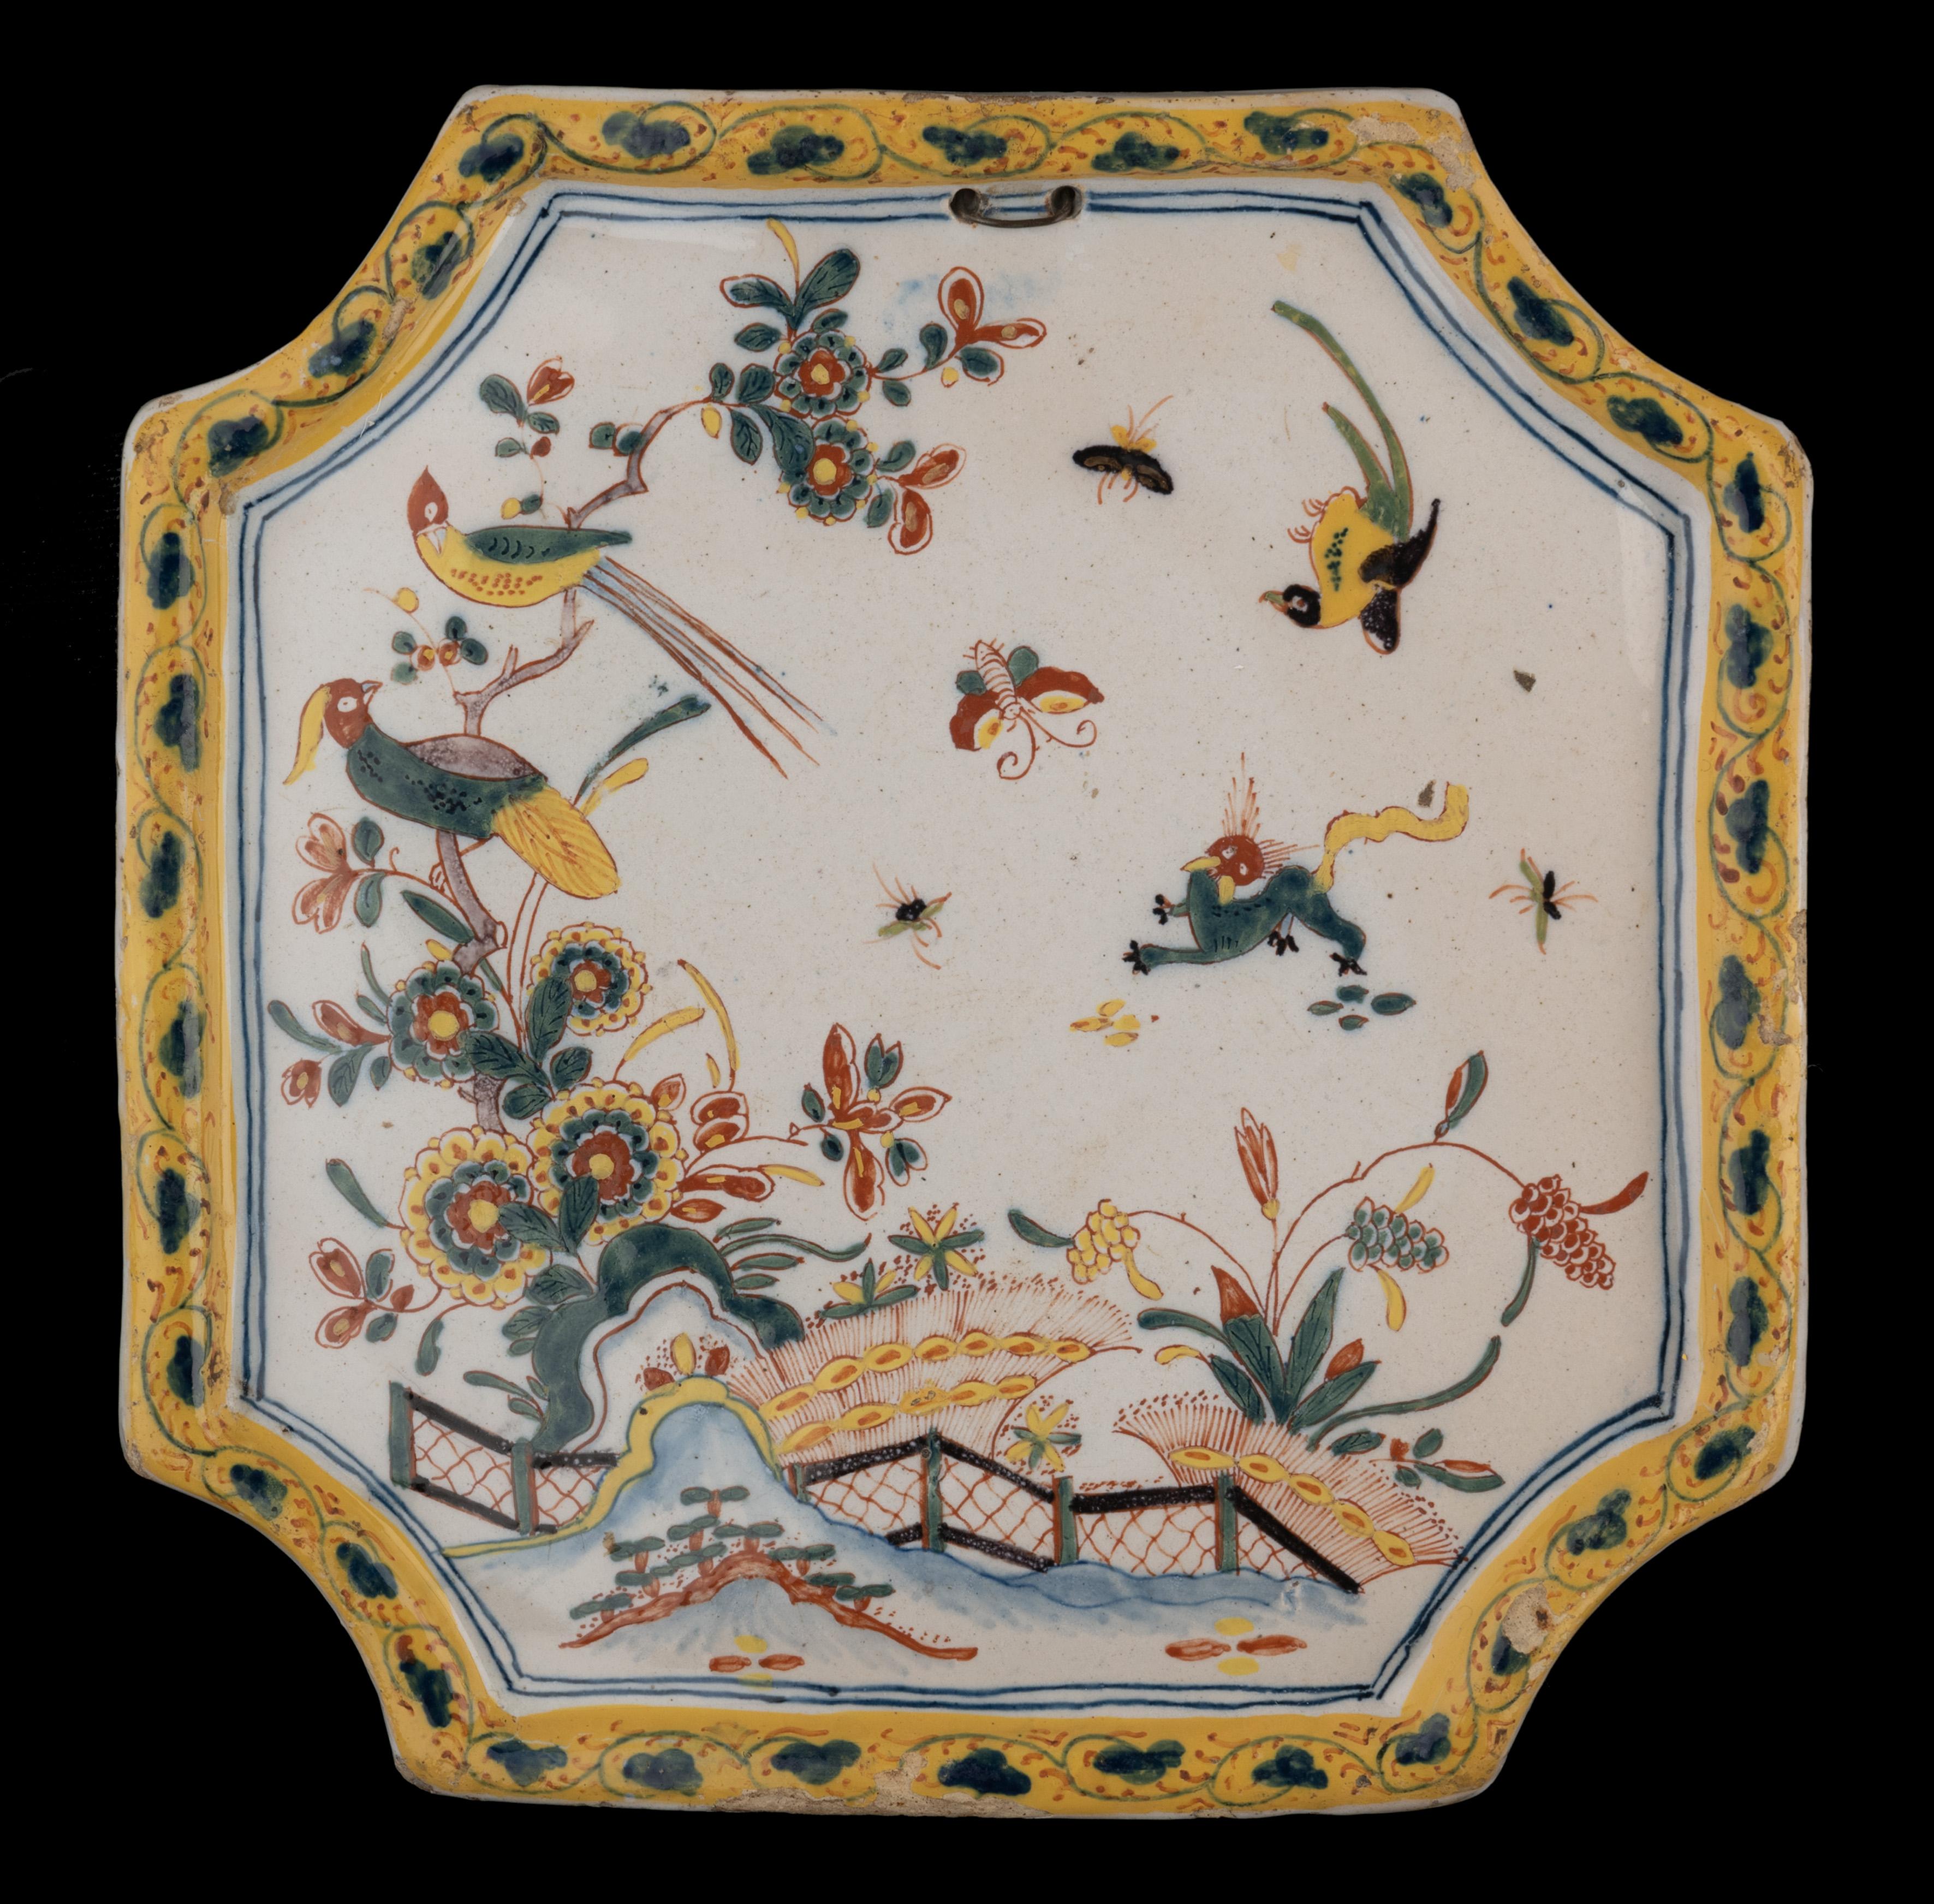 Polychrome Plakette mit orientalischem Blumendekor aus Delft, 1740-1760

Die quadratische, konvexe Plakette hat eingerückte Ecken und einen erhöhten Rand und ist mit einer orientalischen Blumenlandschaft polychrom bemalt. Ein Zaun steht auf einem